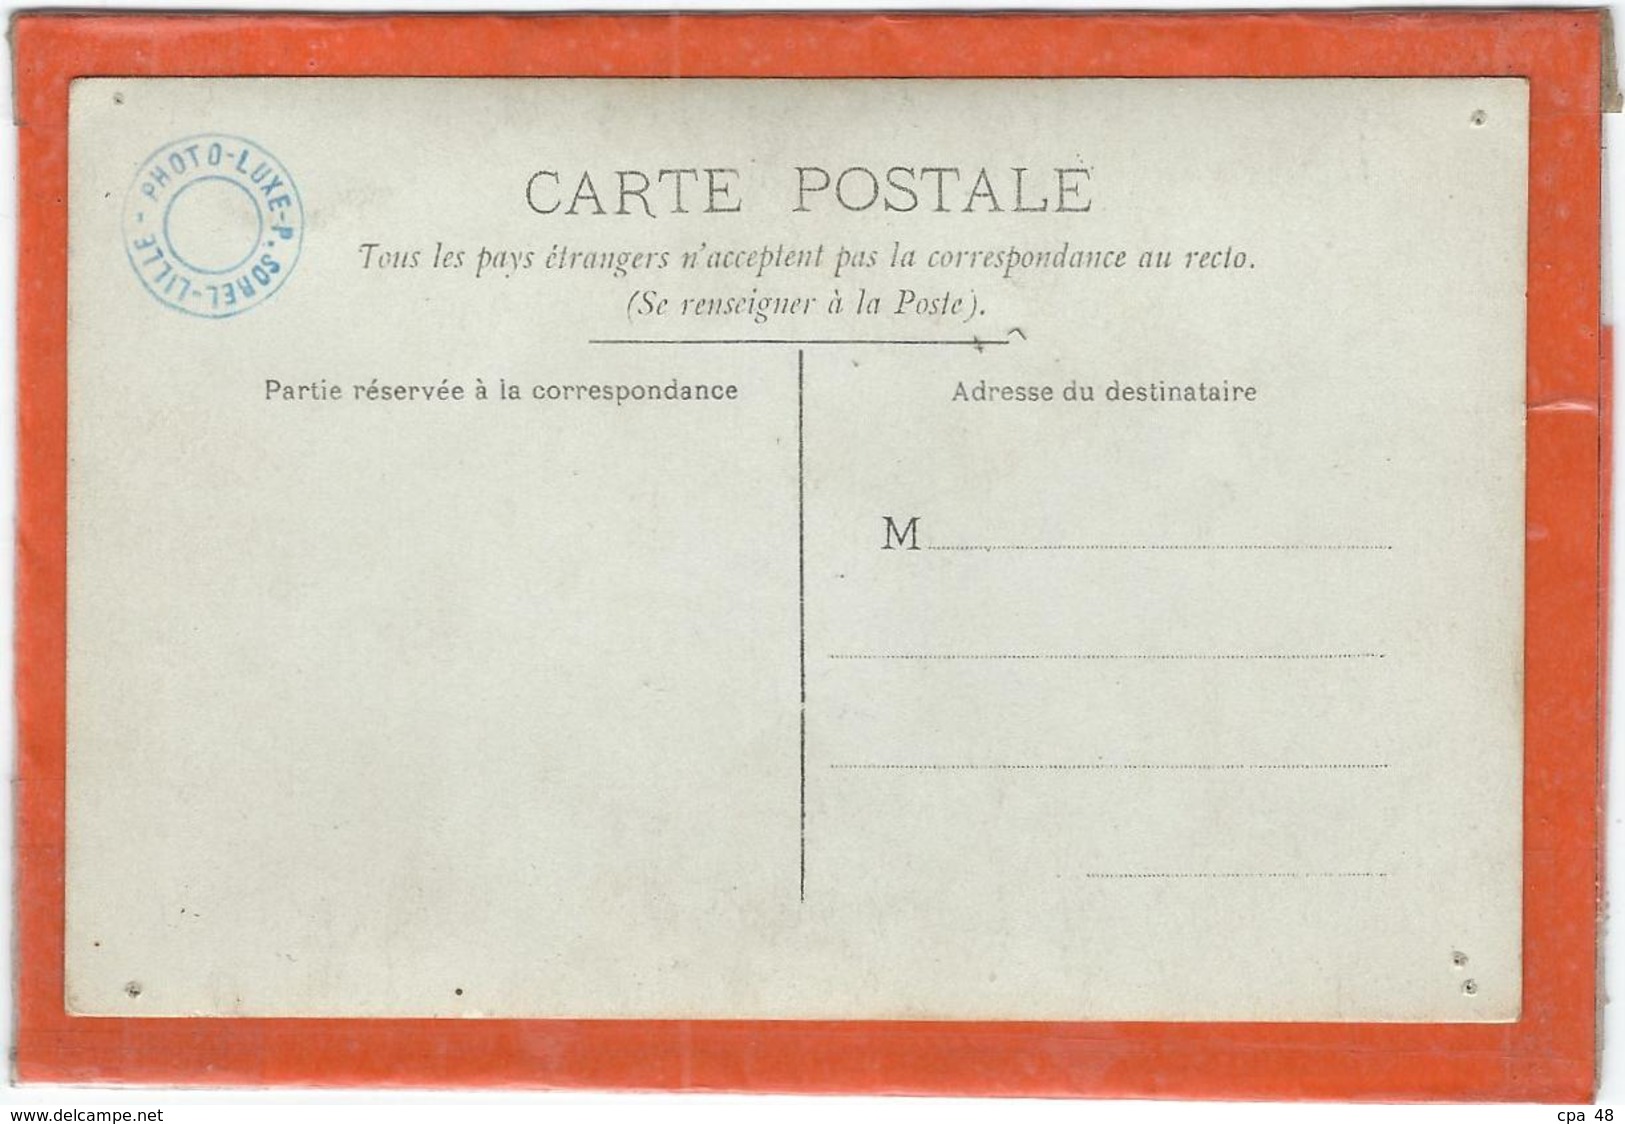 Roubaix : Départ De Vidart Sur Monoplan ? Le 29 Juin 1911...... Document RARE (Carte-Photo)... - Aviateurs